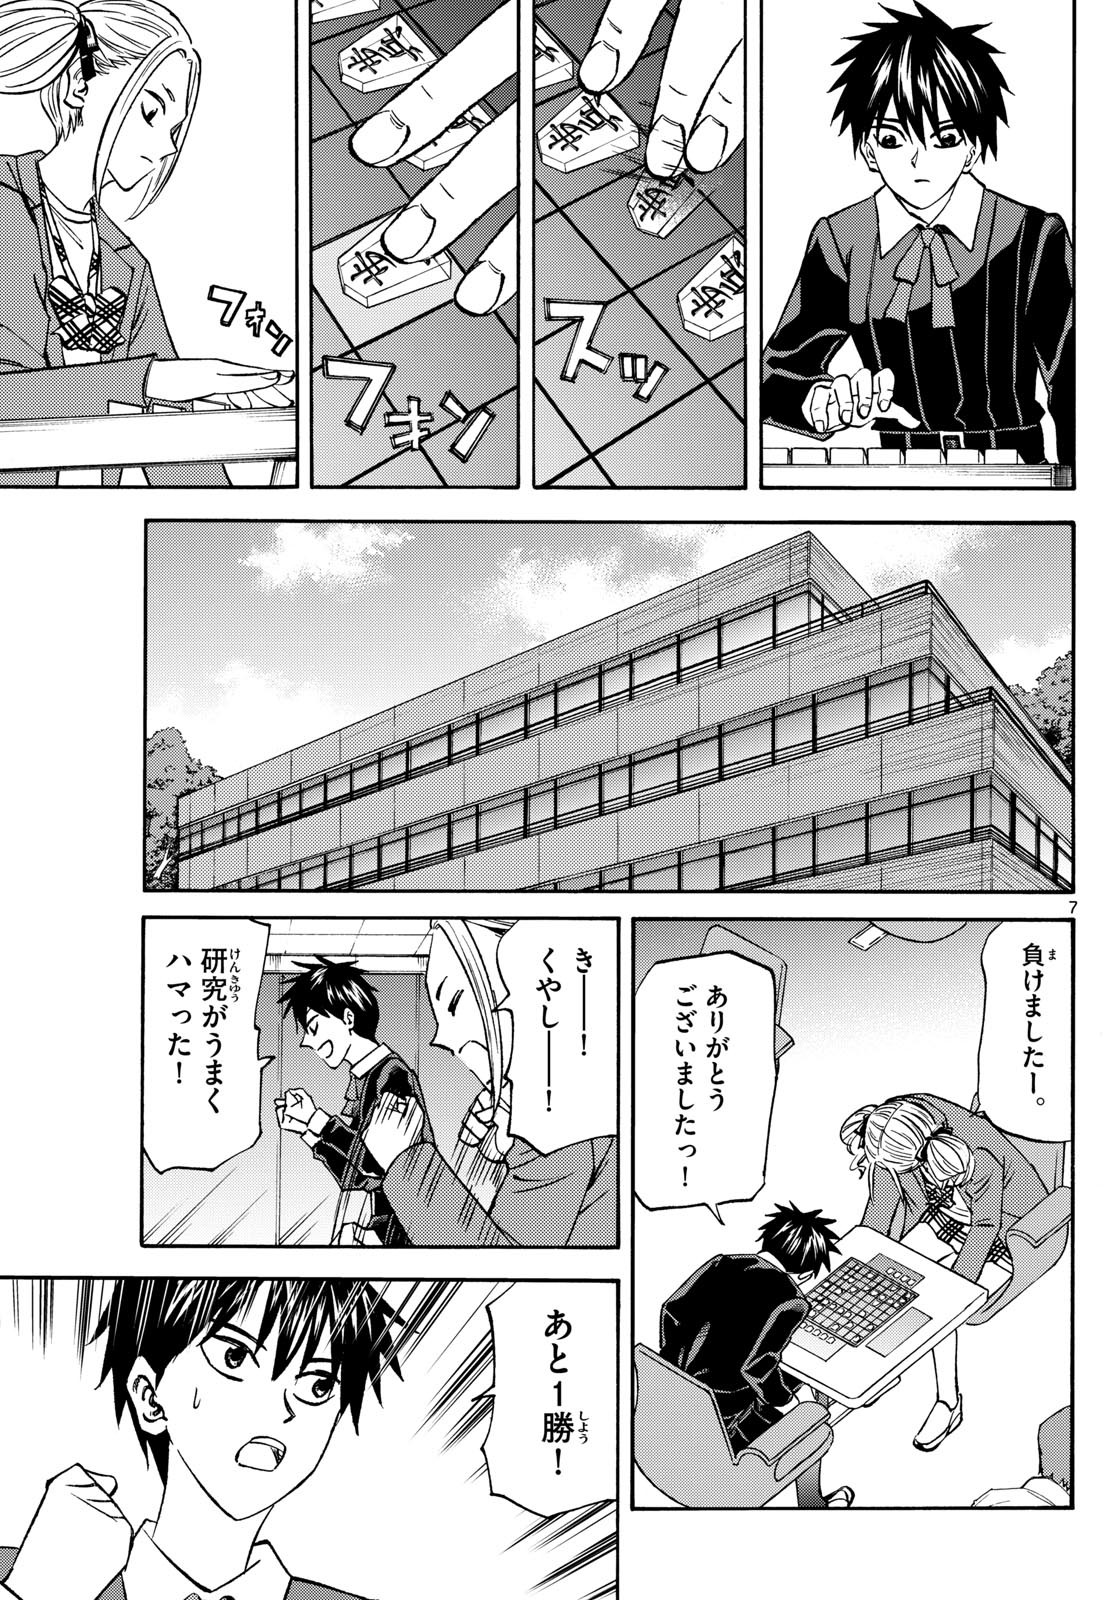 Ryu-to-Ichigo - Chapter 181 - Page 7